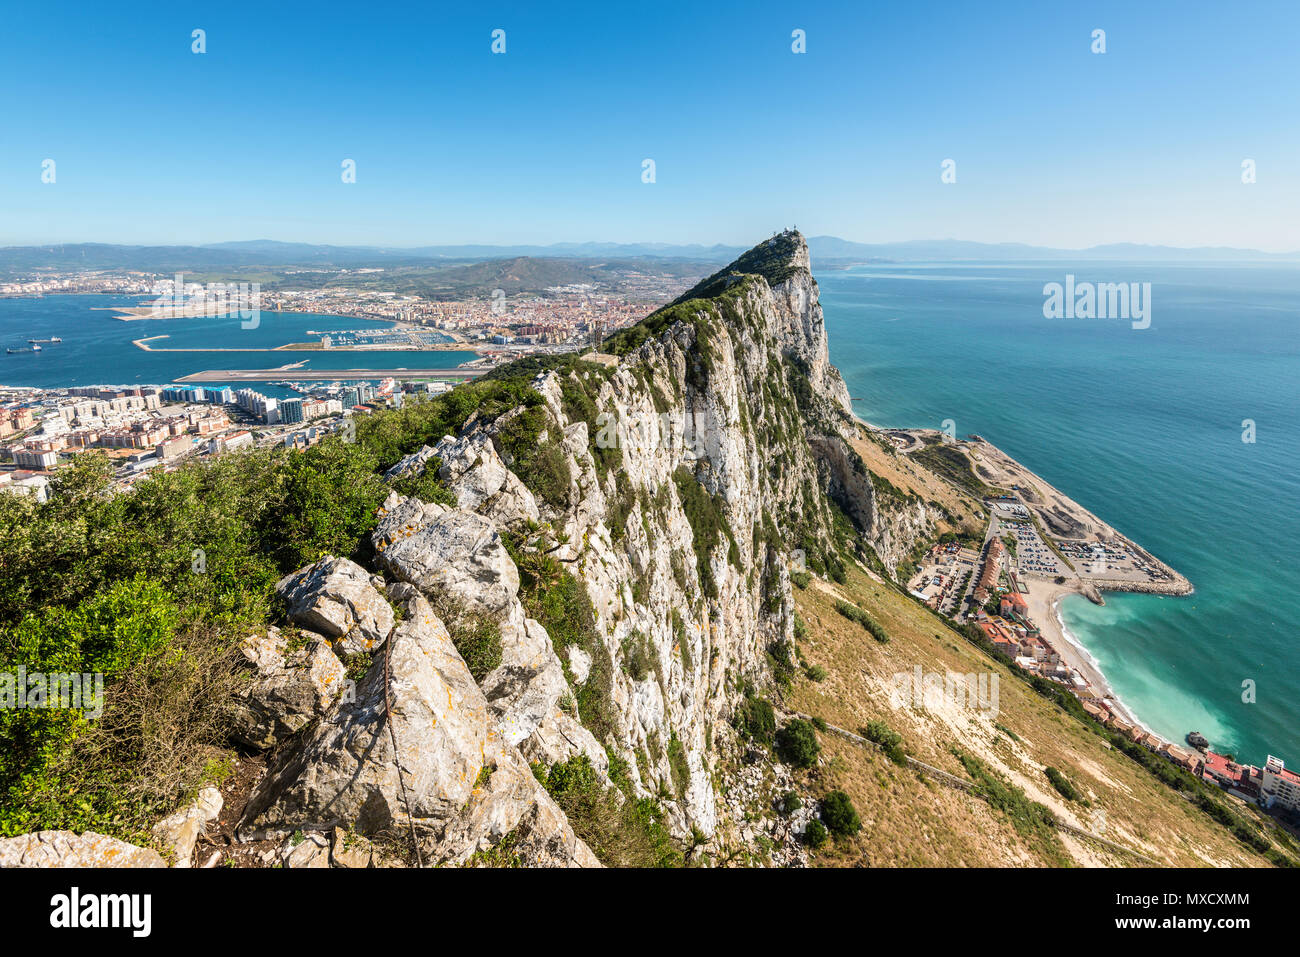 Vue aérienne de haut de rocher de Gibraltar, dans la région de Rock Parc Naturel : sur le côté gauche de la ville de Gibraltar et la baie, la mer Méditerranée sur la droite, United Kingdo Banque D'Images